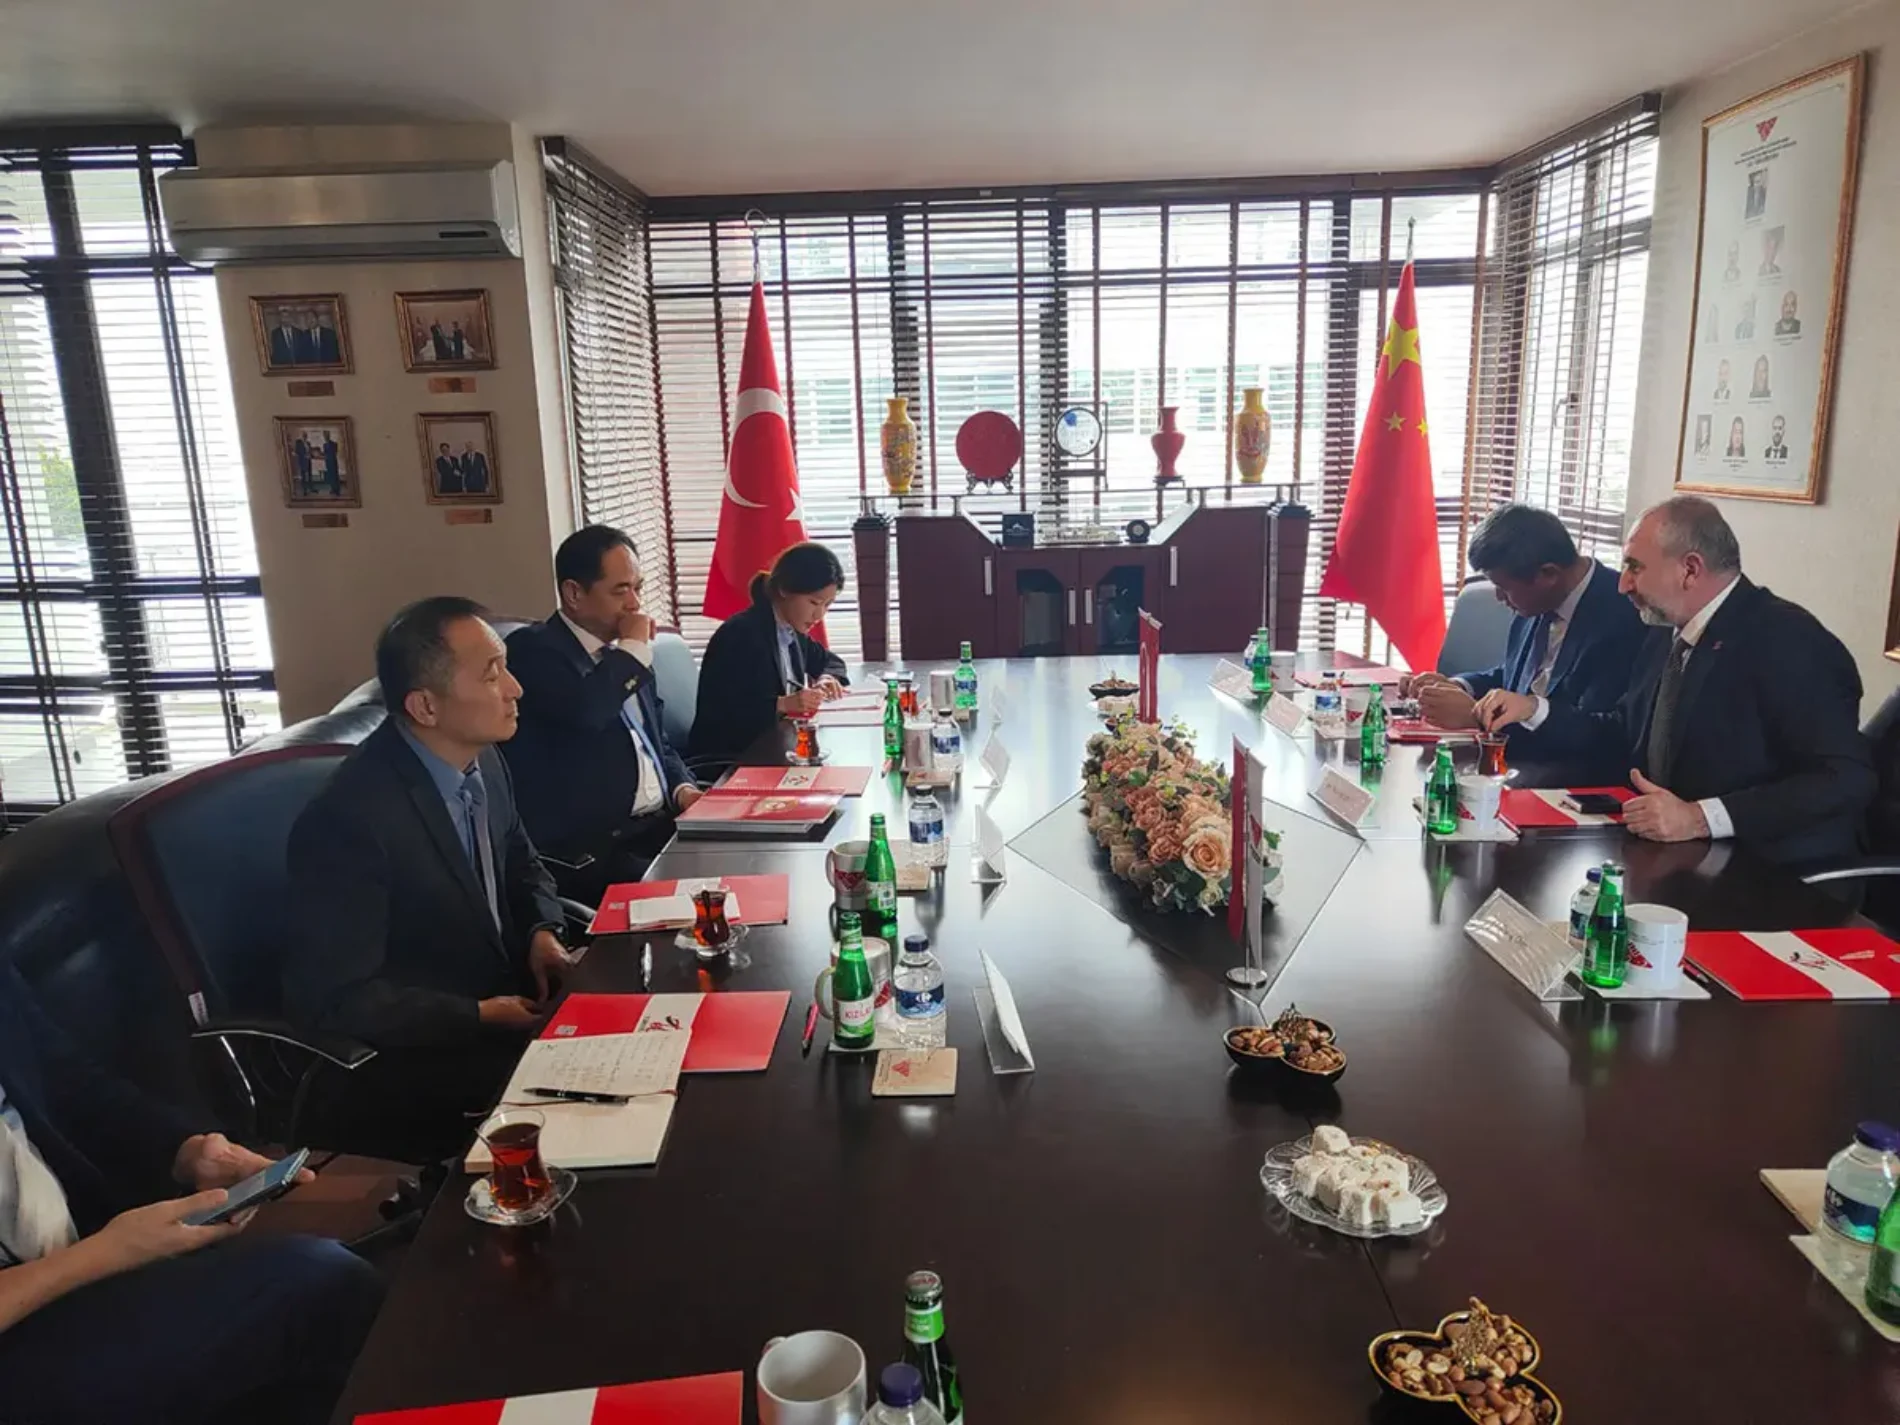 Çin Halkının Yabancı Ülkelerle Dostluk Derneği (CPAFFC) Türkiye Ziyaretleri Kapsamında Derneğimiz Türkiye Çin İş Geliştirme ve Destekleme Derneğini Ziyaret Ettiler